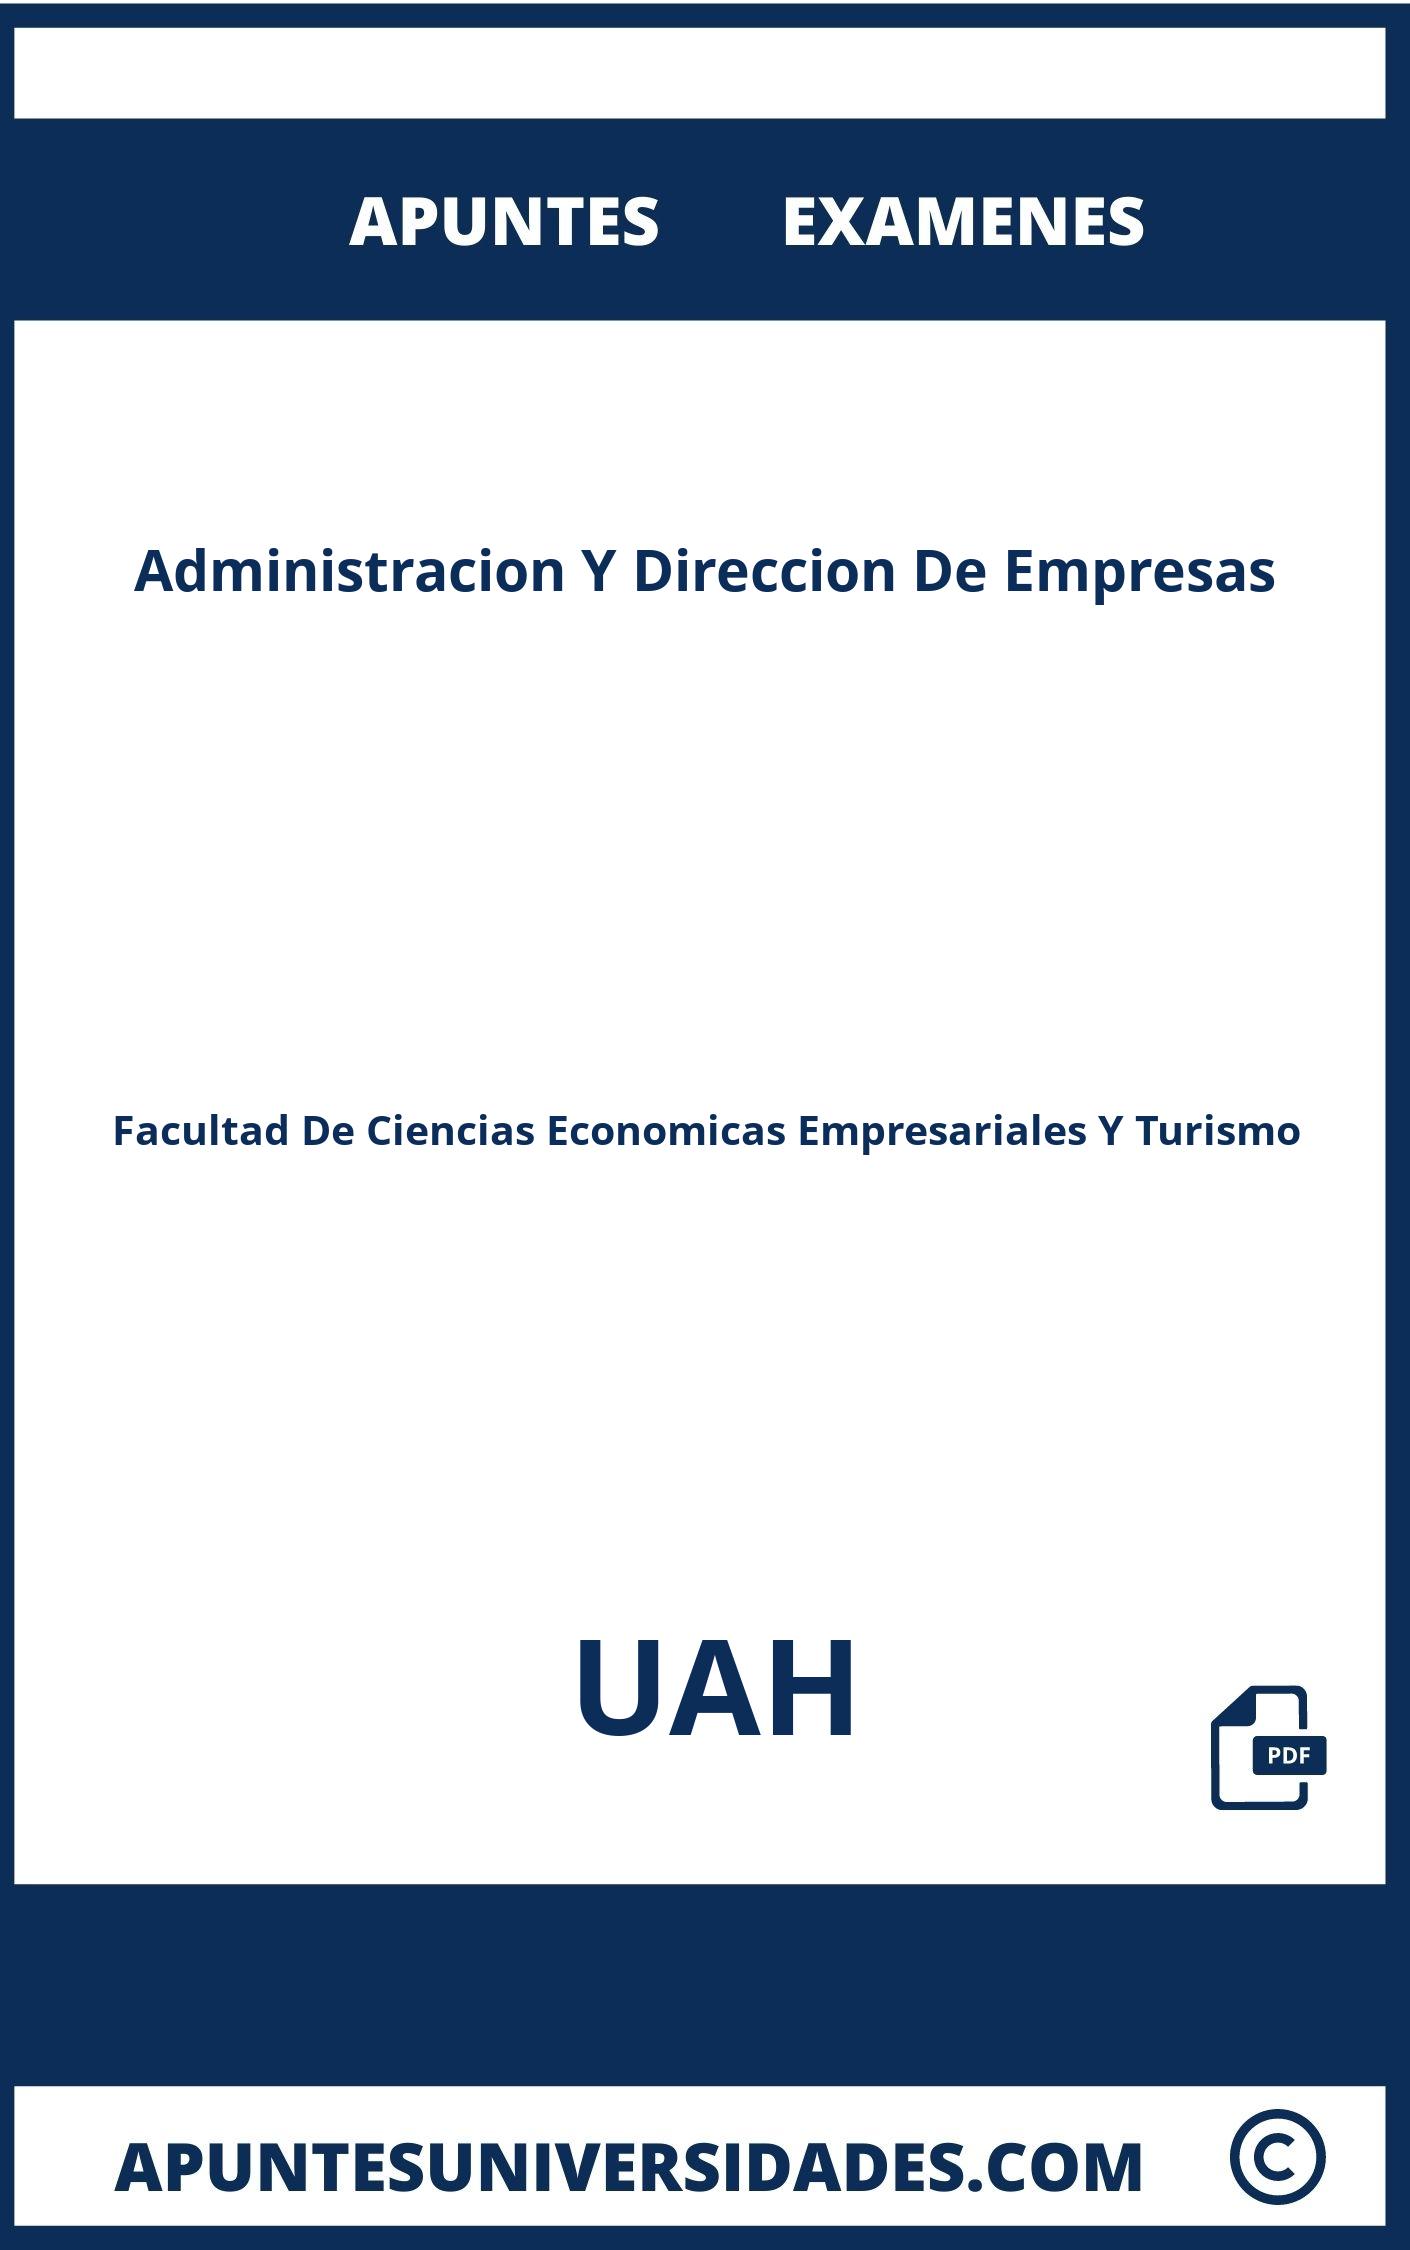 Administracion Y Direccion De Empresas UAH Examenes Apuntes